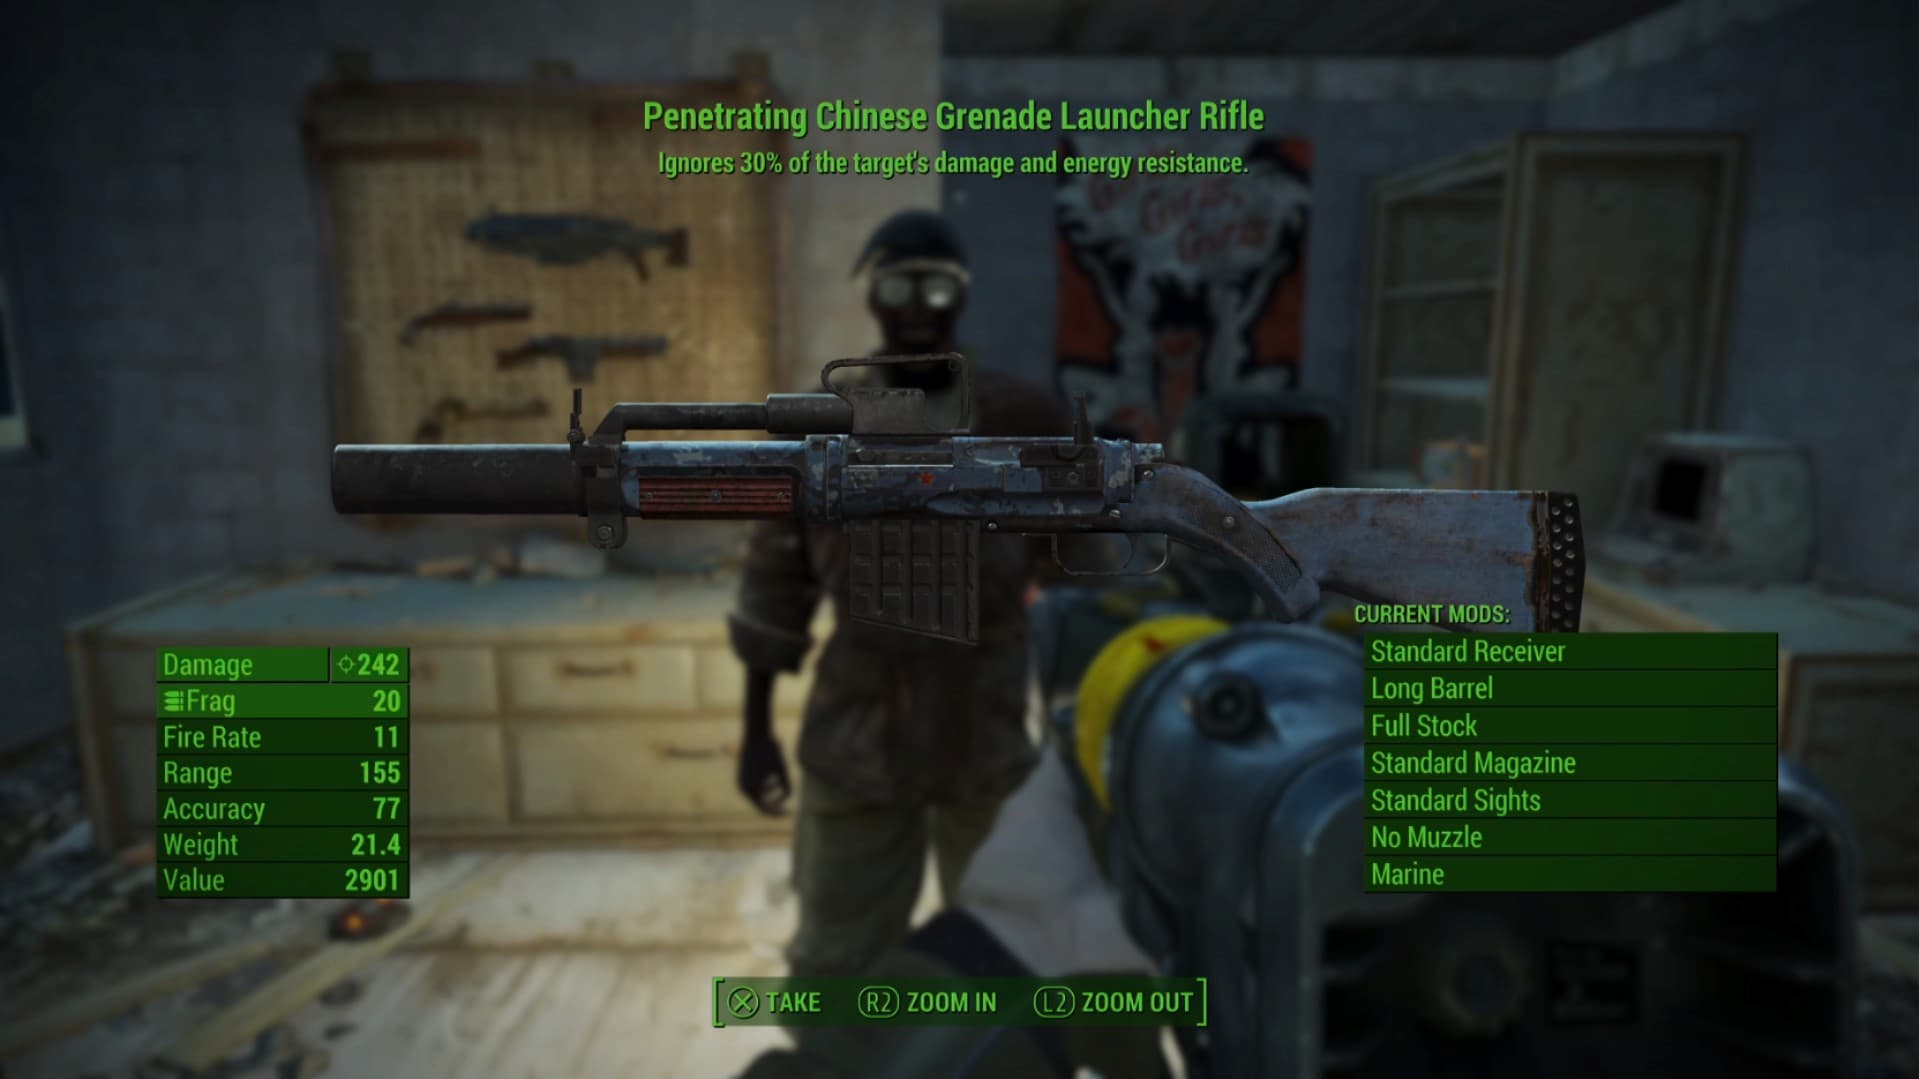 Le fusil lance-grenades chinois pénétrant que vous obtenez en récompense dans la quête When Pigs Fly de Fallout 4